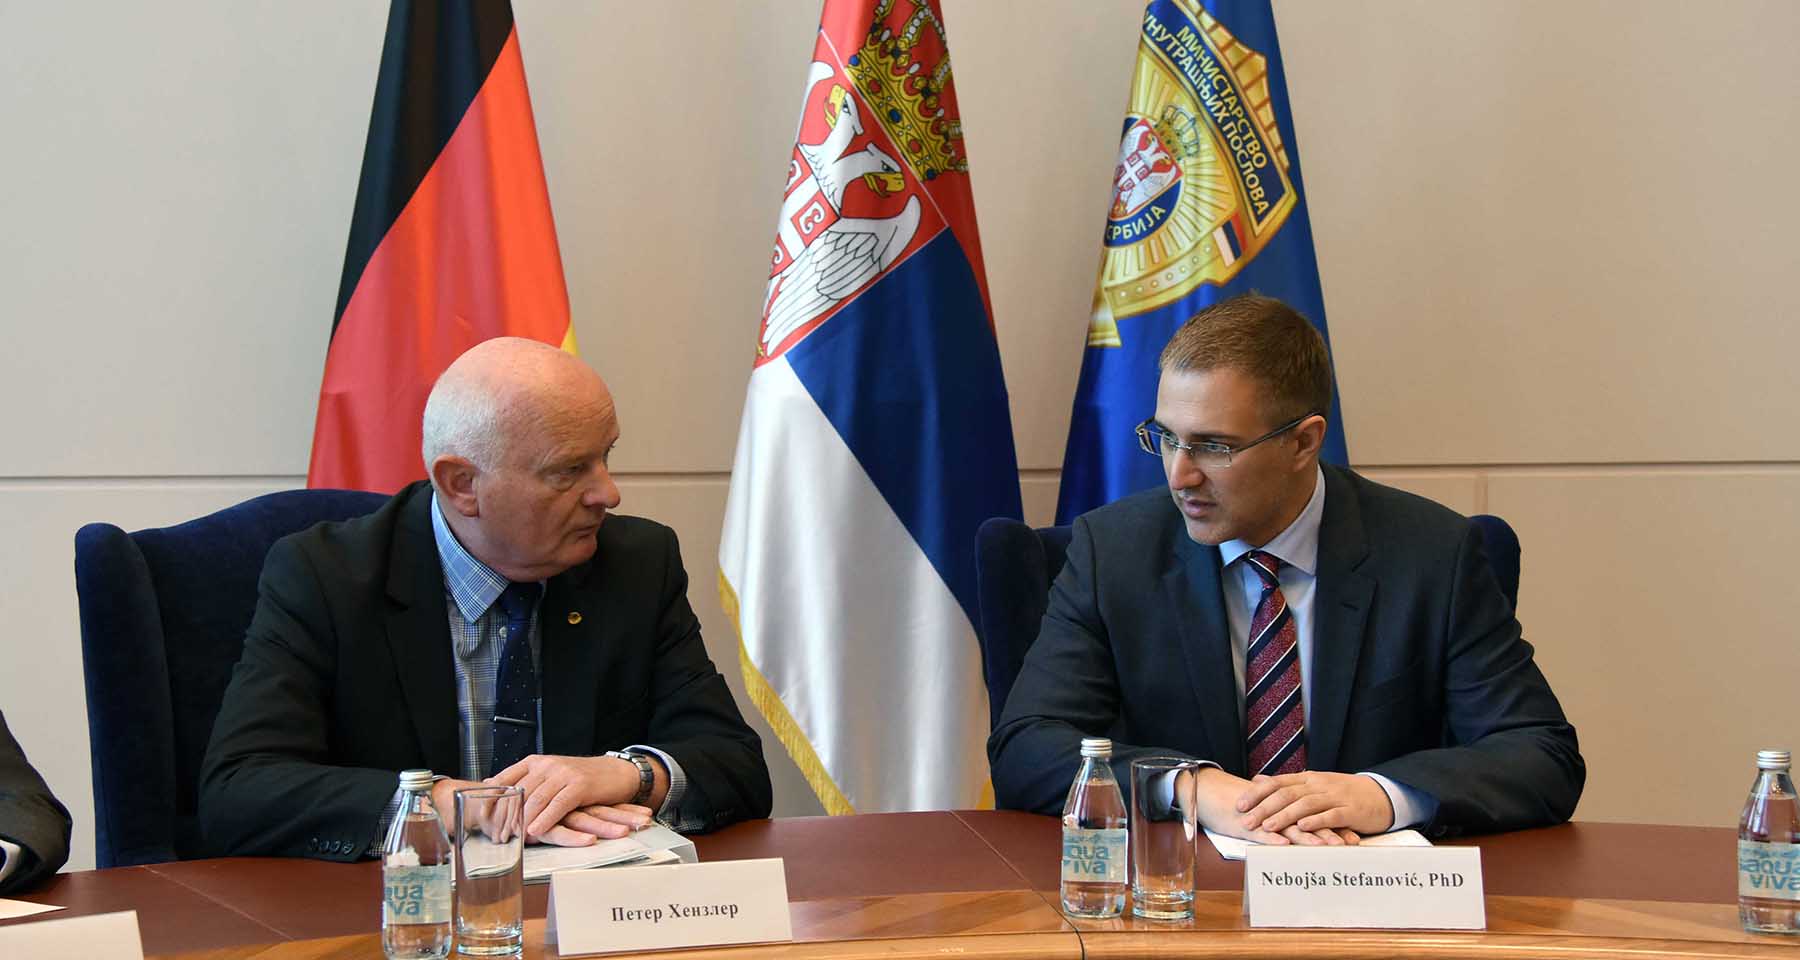 Стефановић и Хензлер сагласни да је српска полиција поуздан партнер у сузбијању свих видова криминала